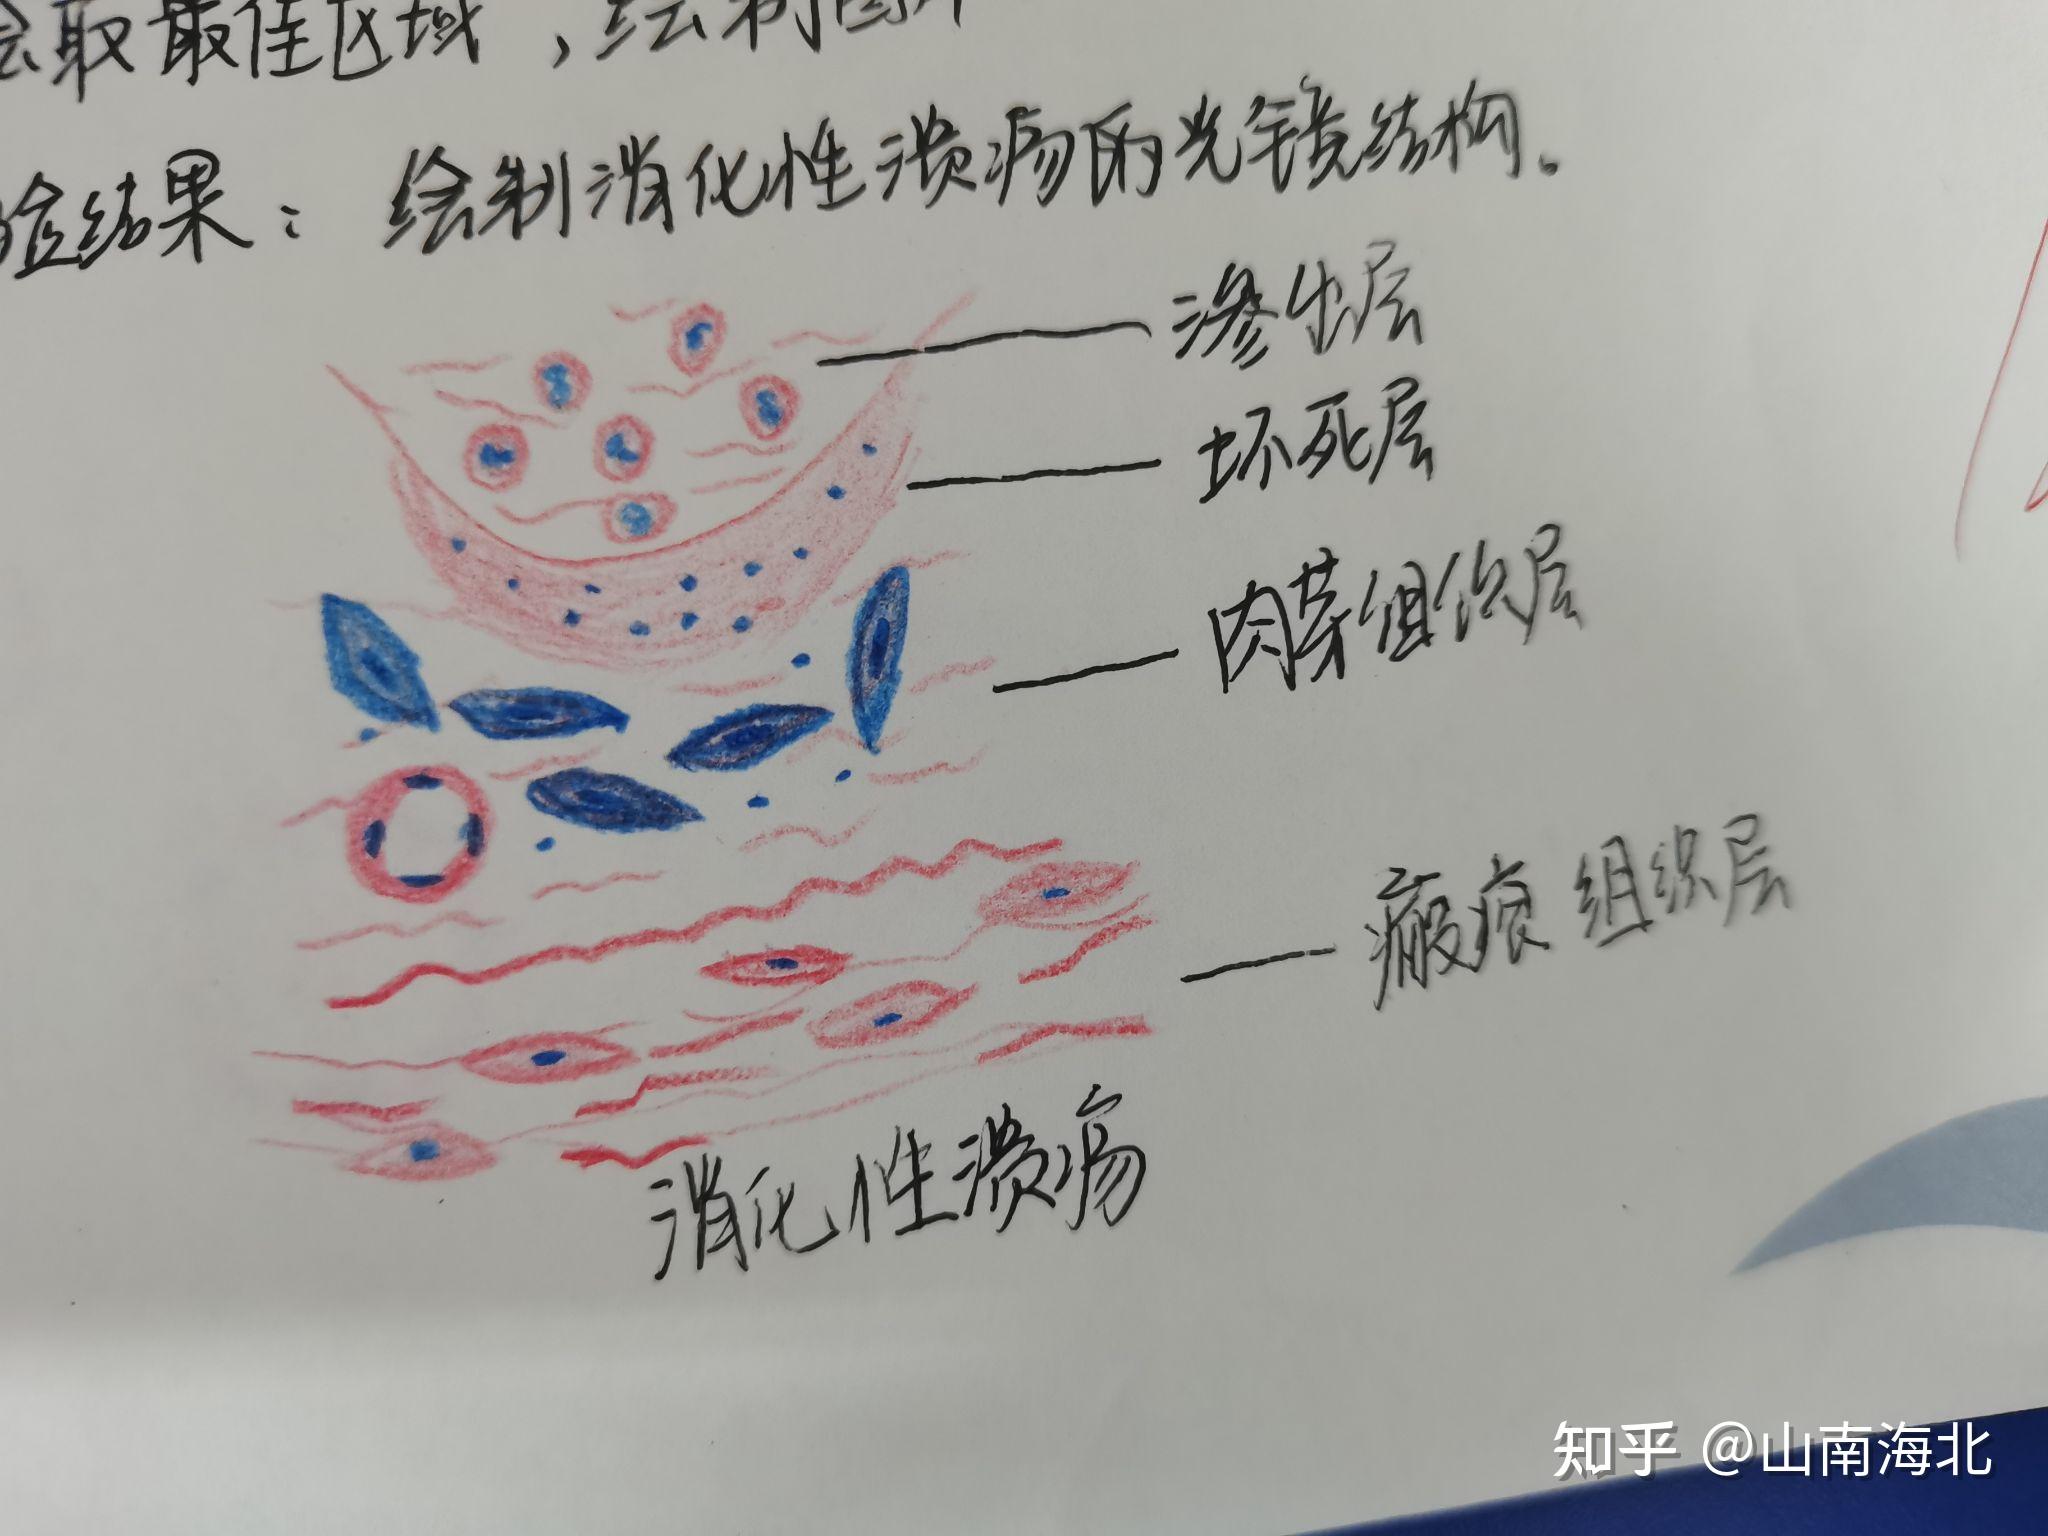 胃切片红蓝铅笔手绘图图片